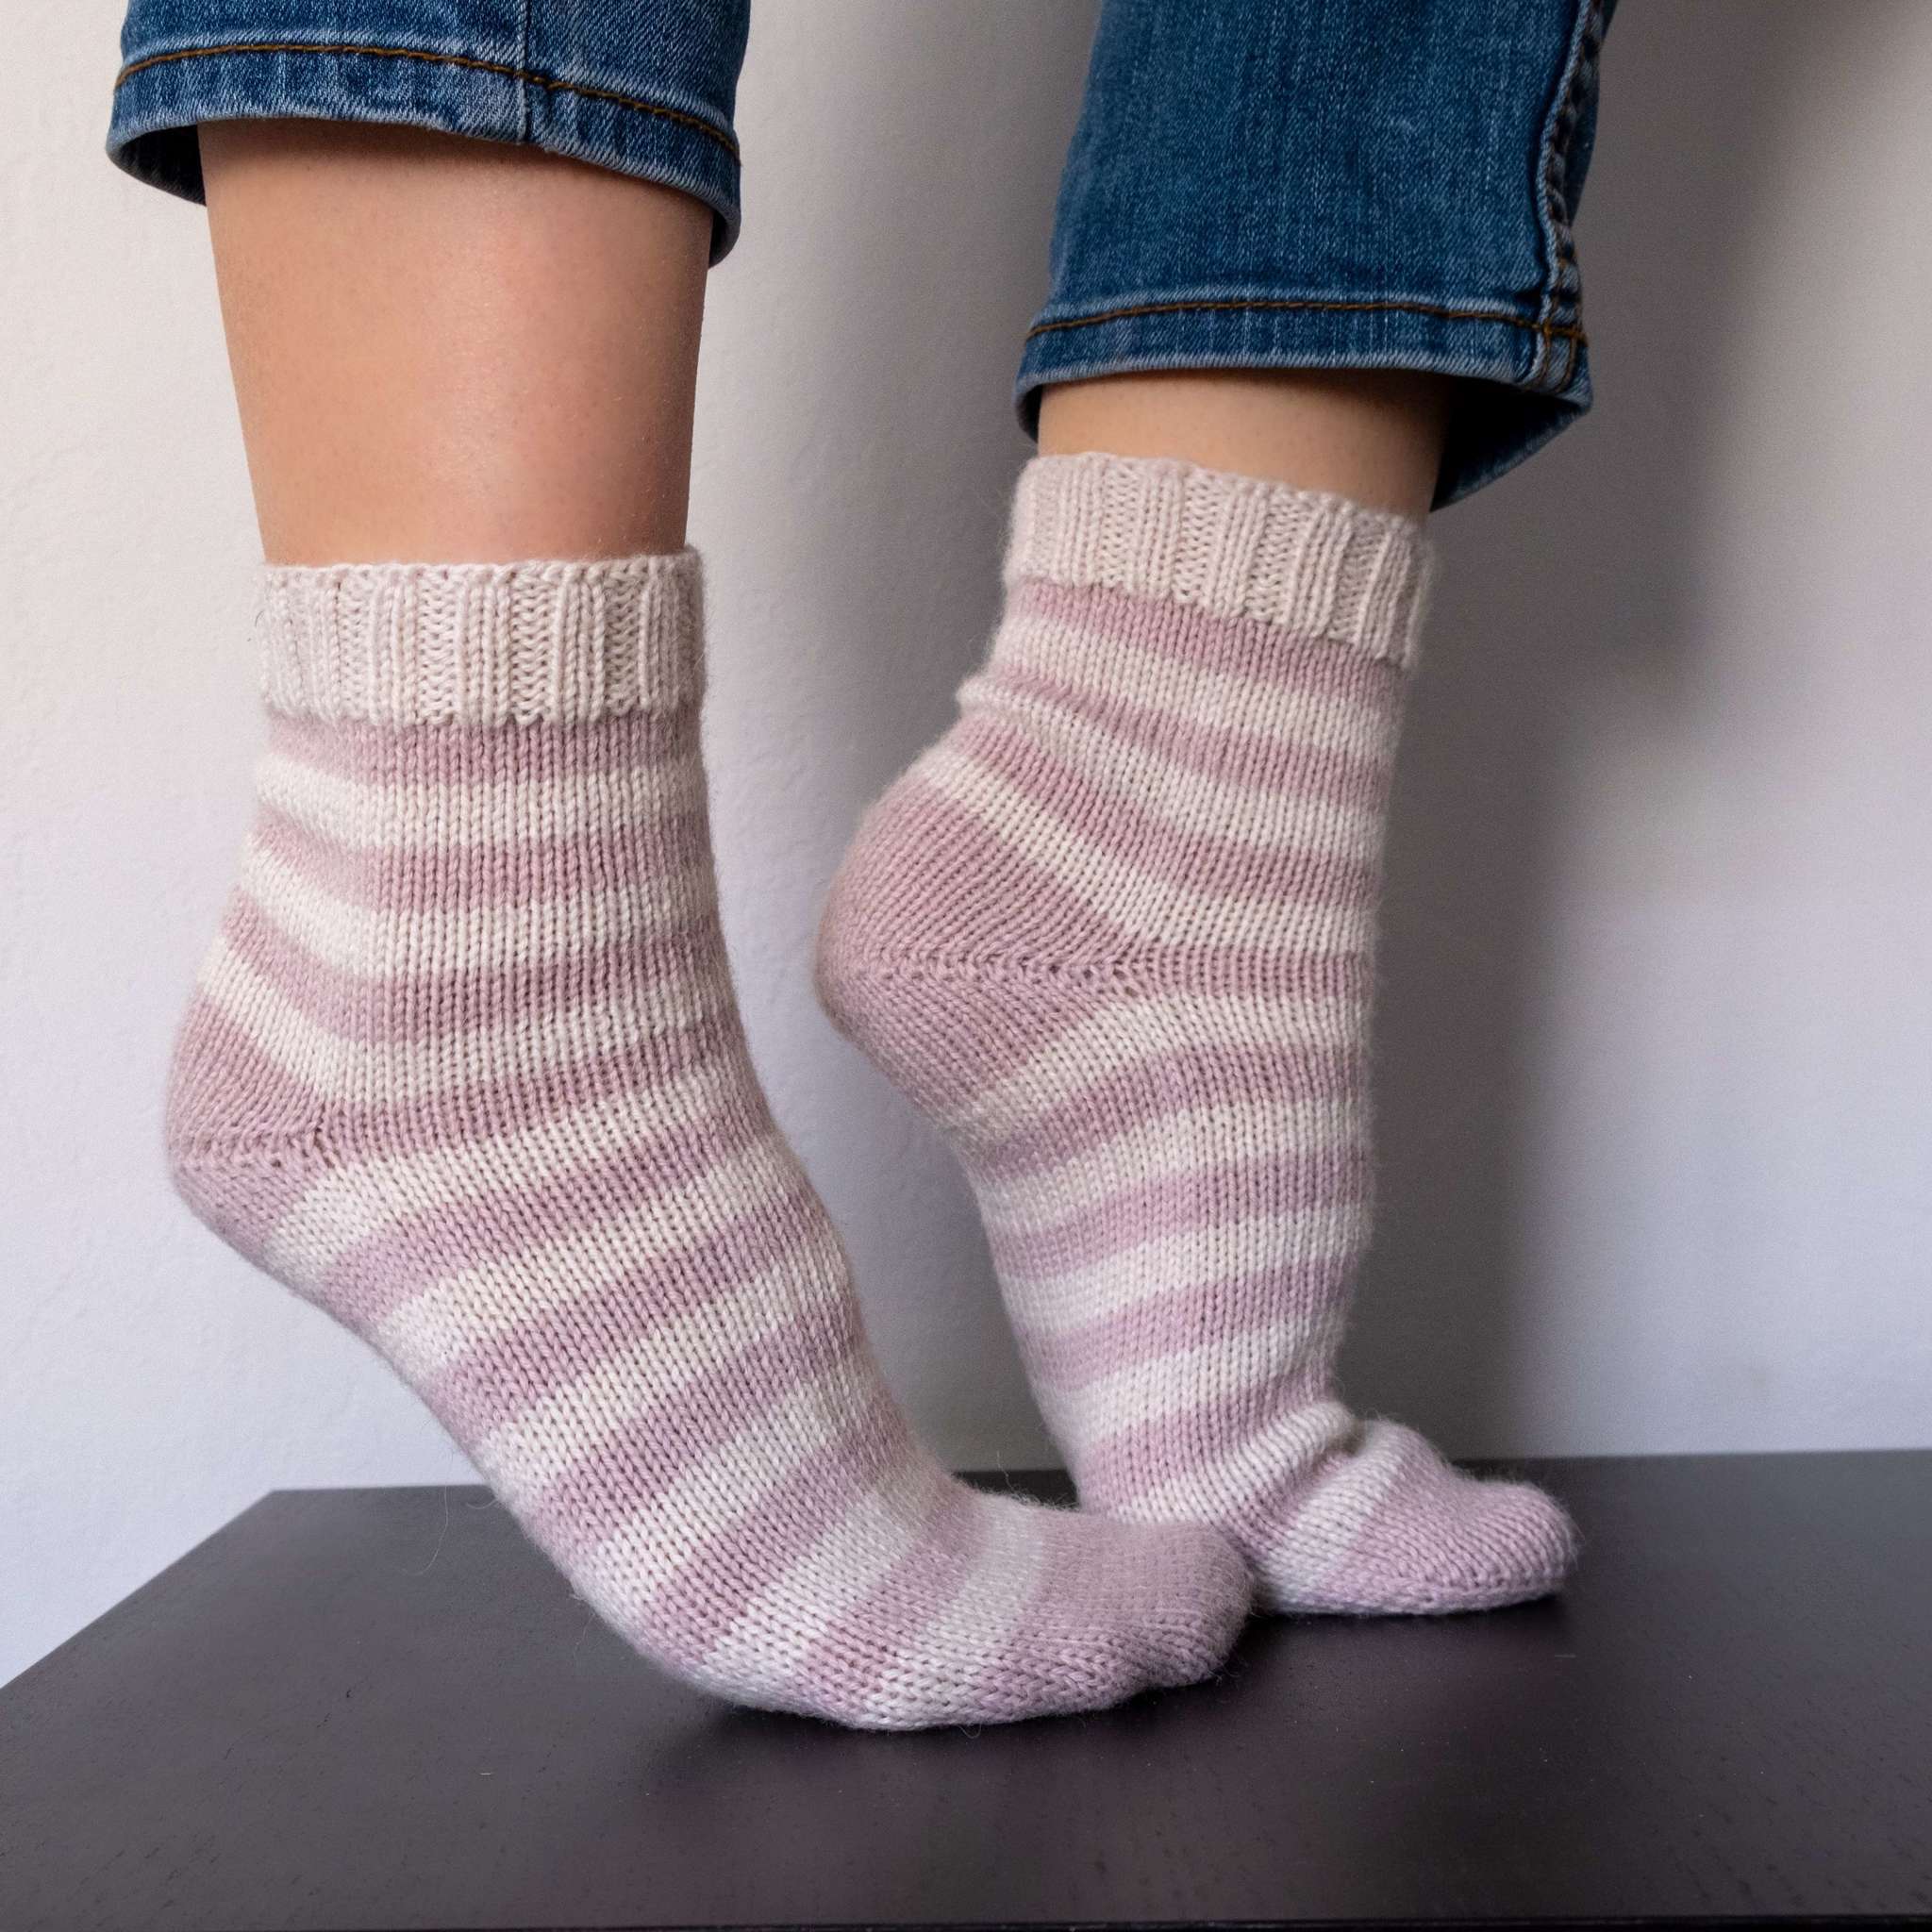 Вязание базовой модели носков на 5 спицах